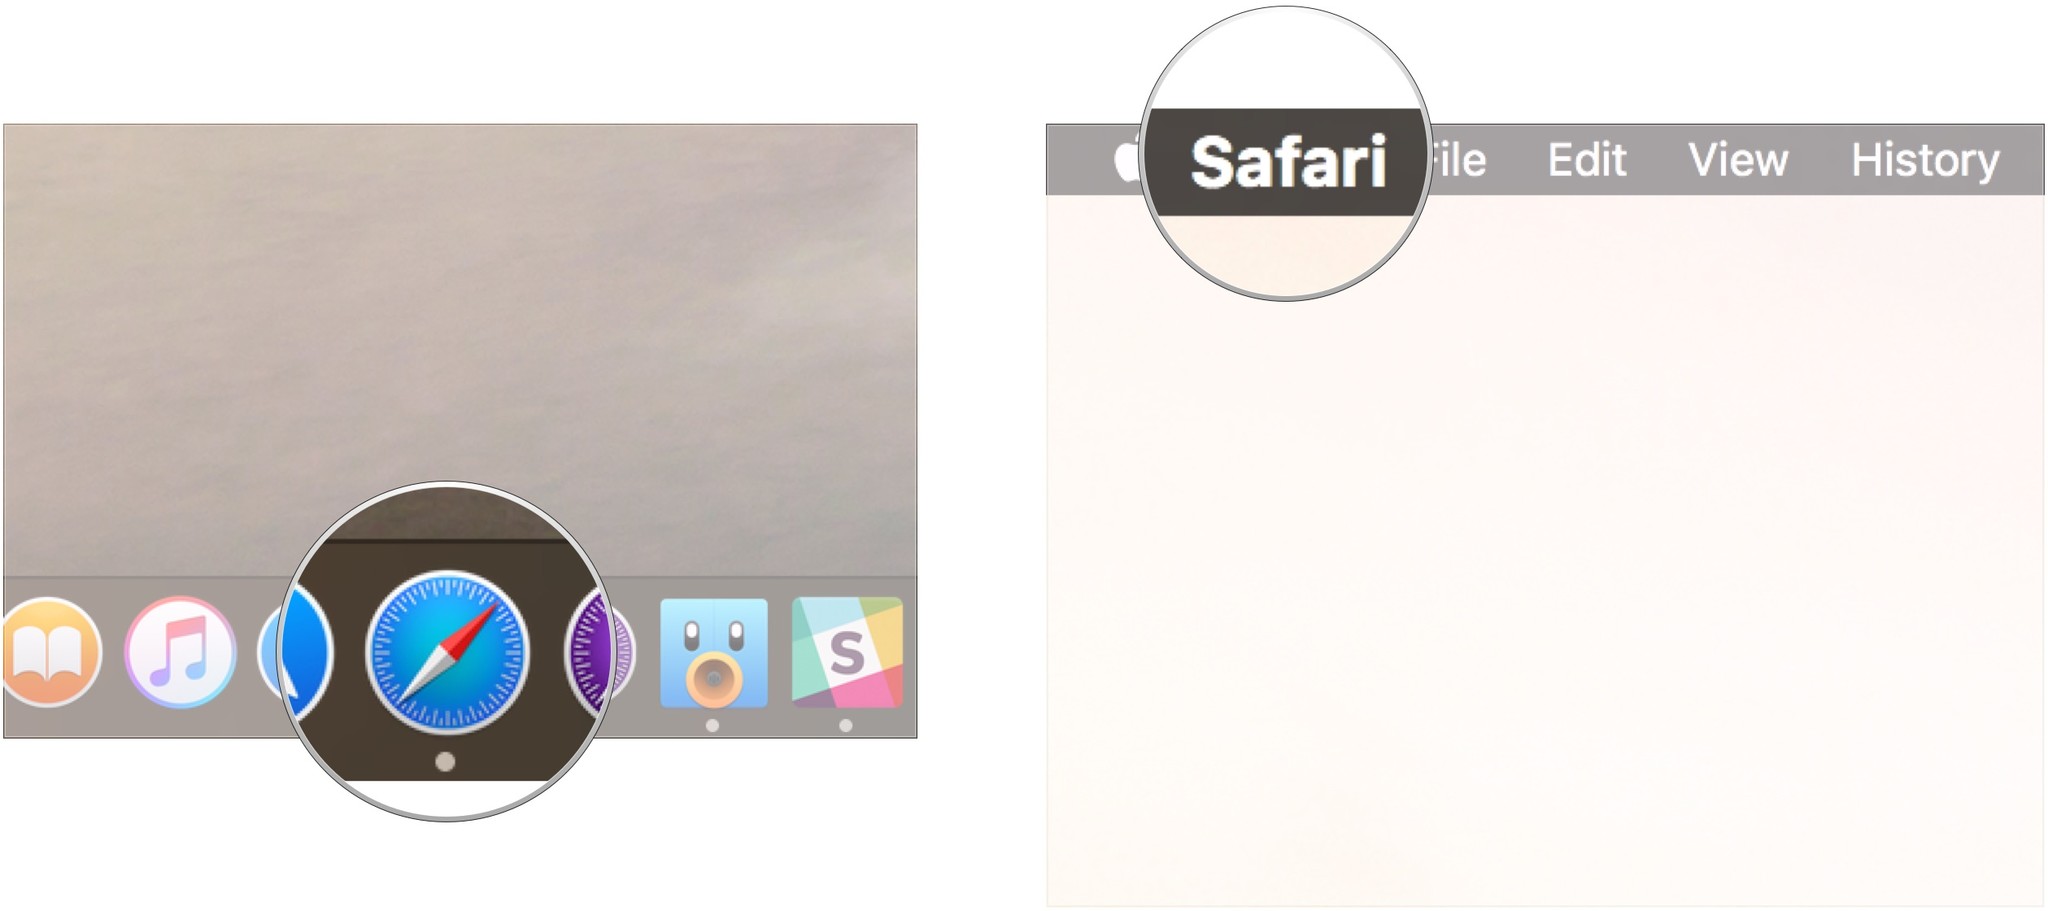 Open Safari, click Safari